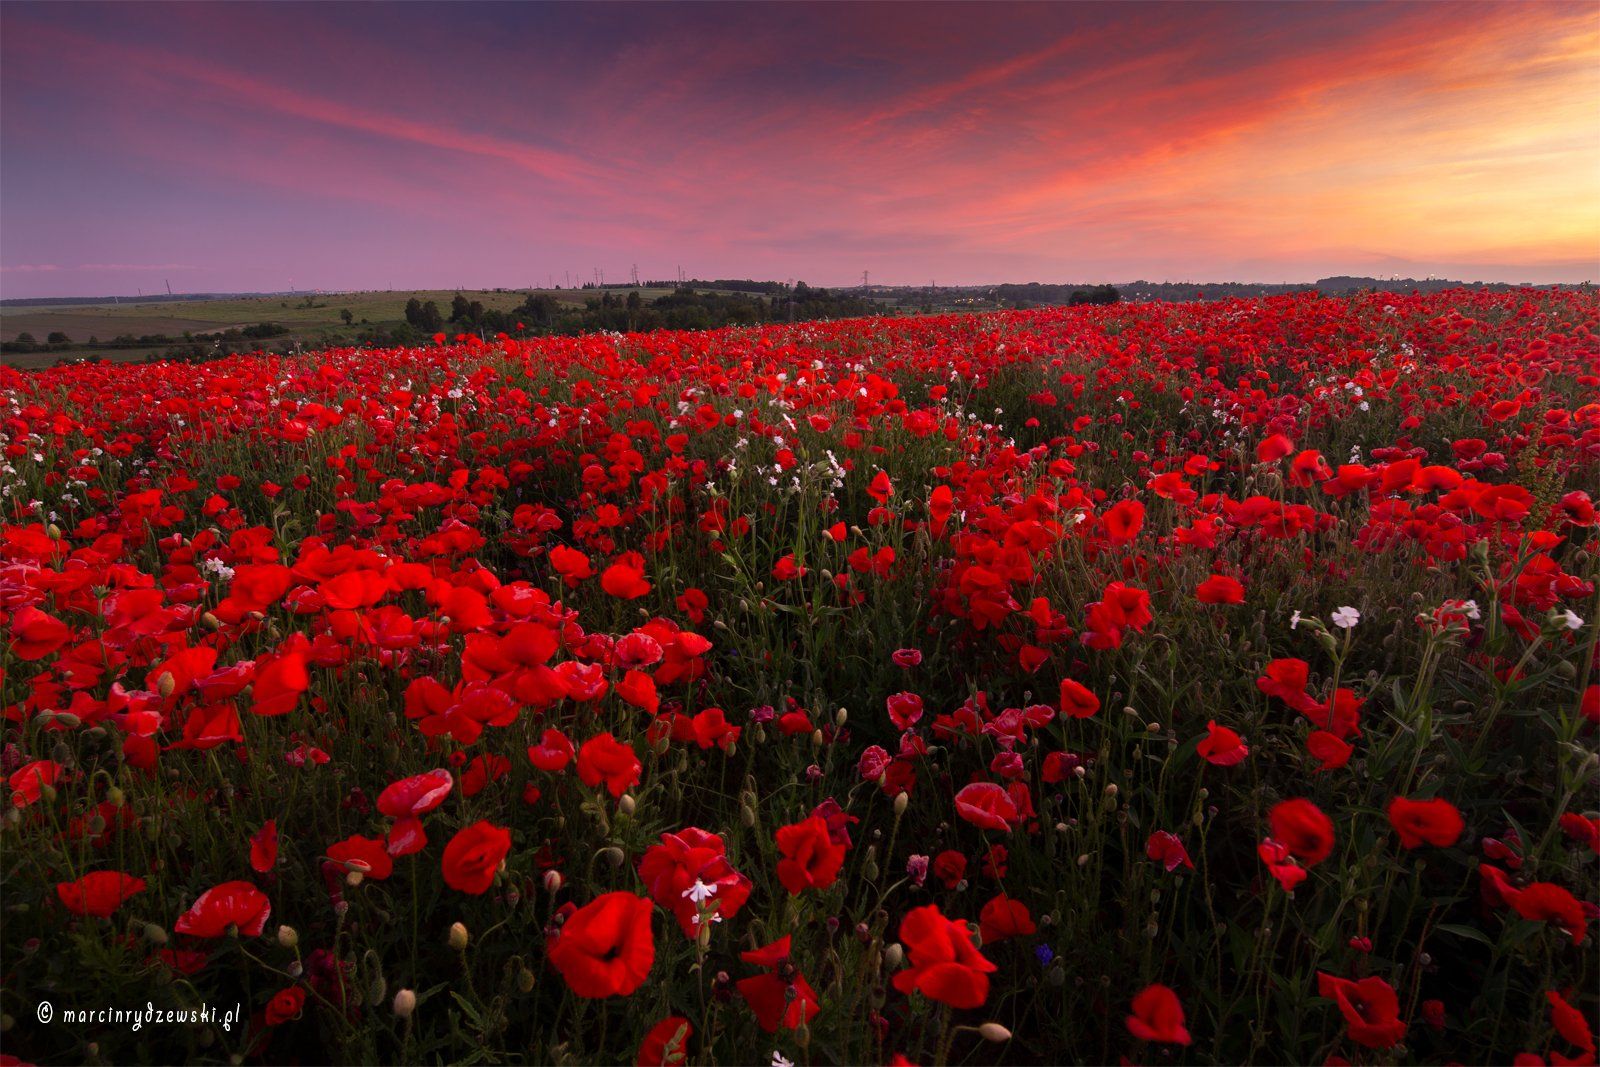 poppies, maki, polska, marcin rydzewski, landscape, canon, nature, red, flowers, , Marcin Rydzewski